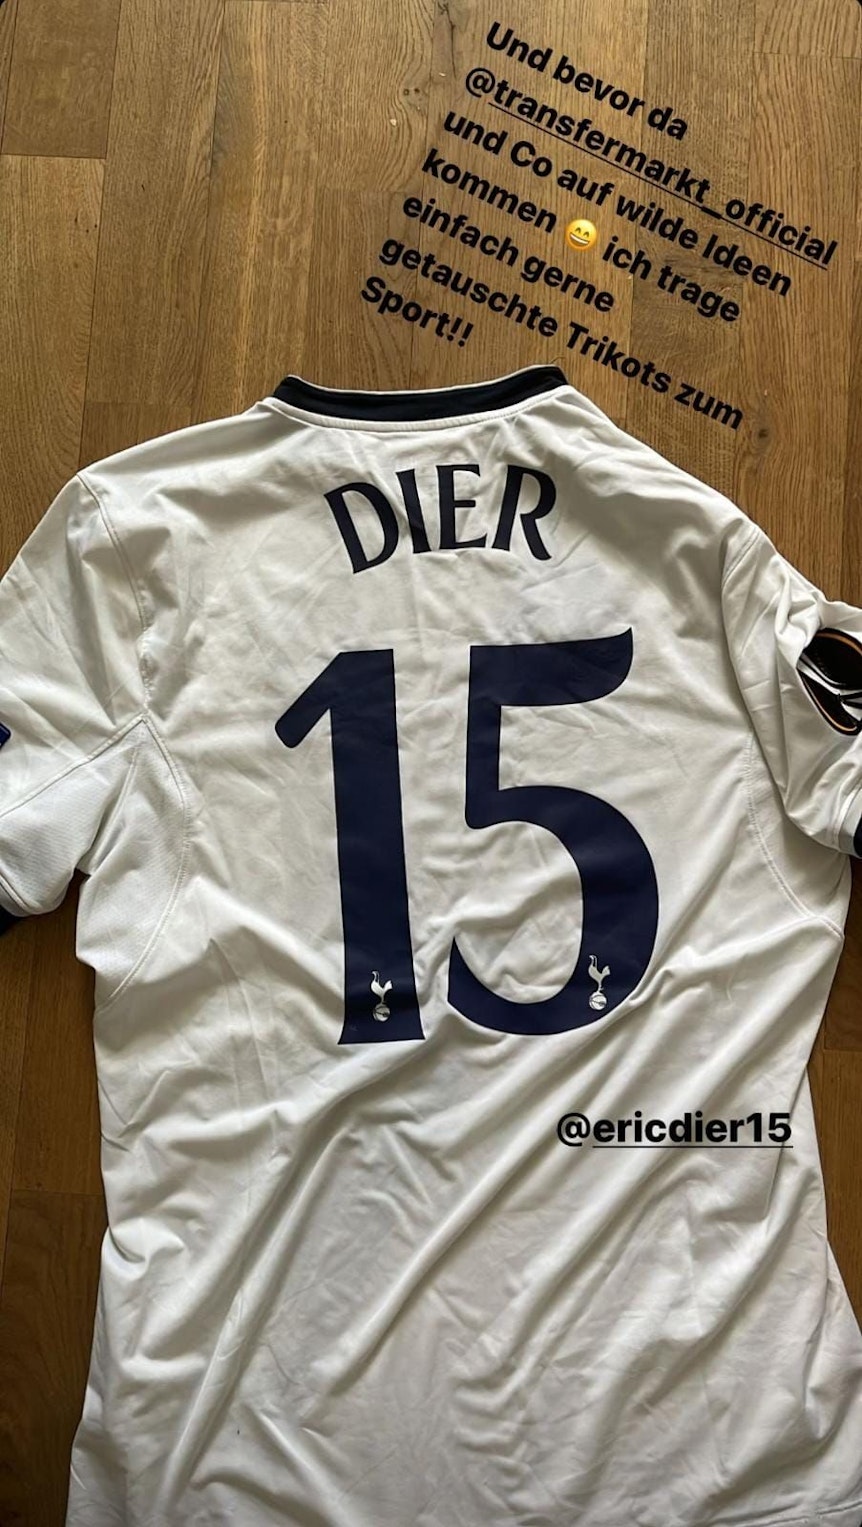 Mats Hummels erklärt auf Instagram, wieso er das Trikot von den Tottenham Hotspurs trägt.